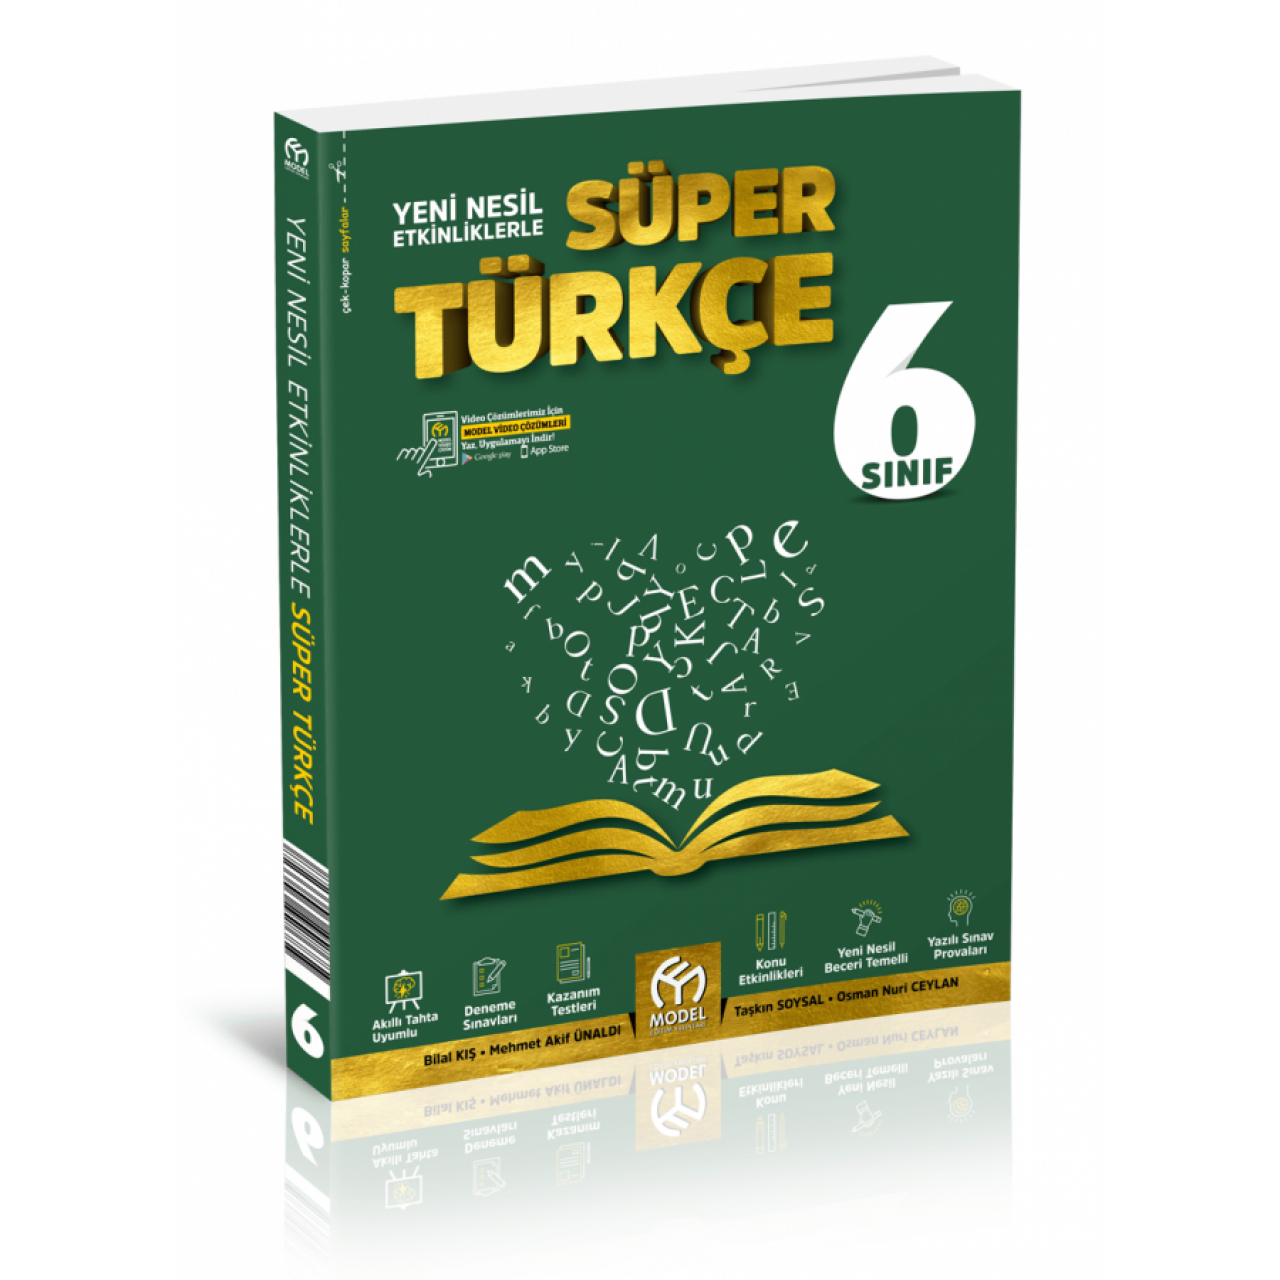 6. Sınıf Yeni Nesil Etkinliklerle Süper Türkçe Model Eğitim Yayınları